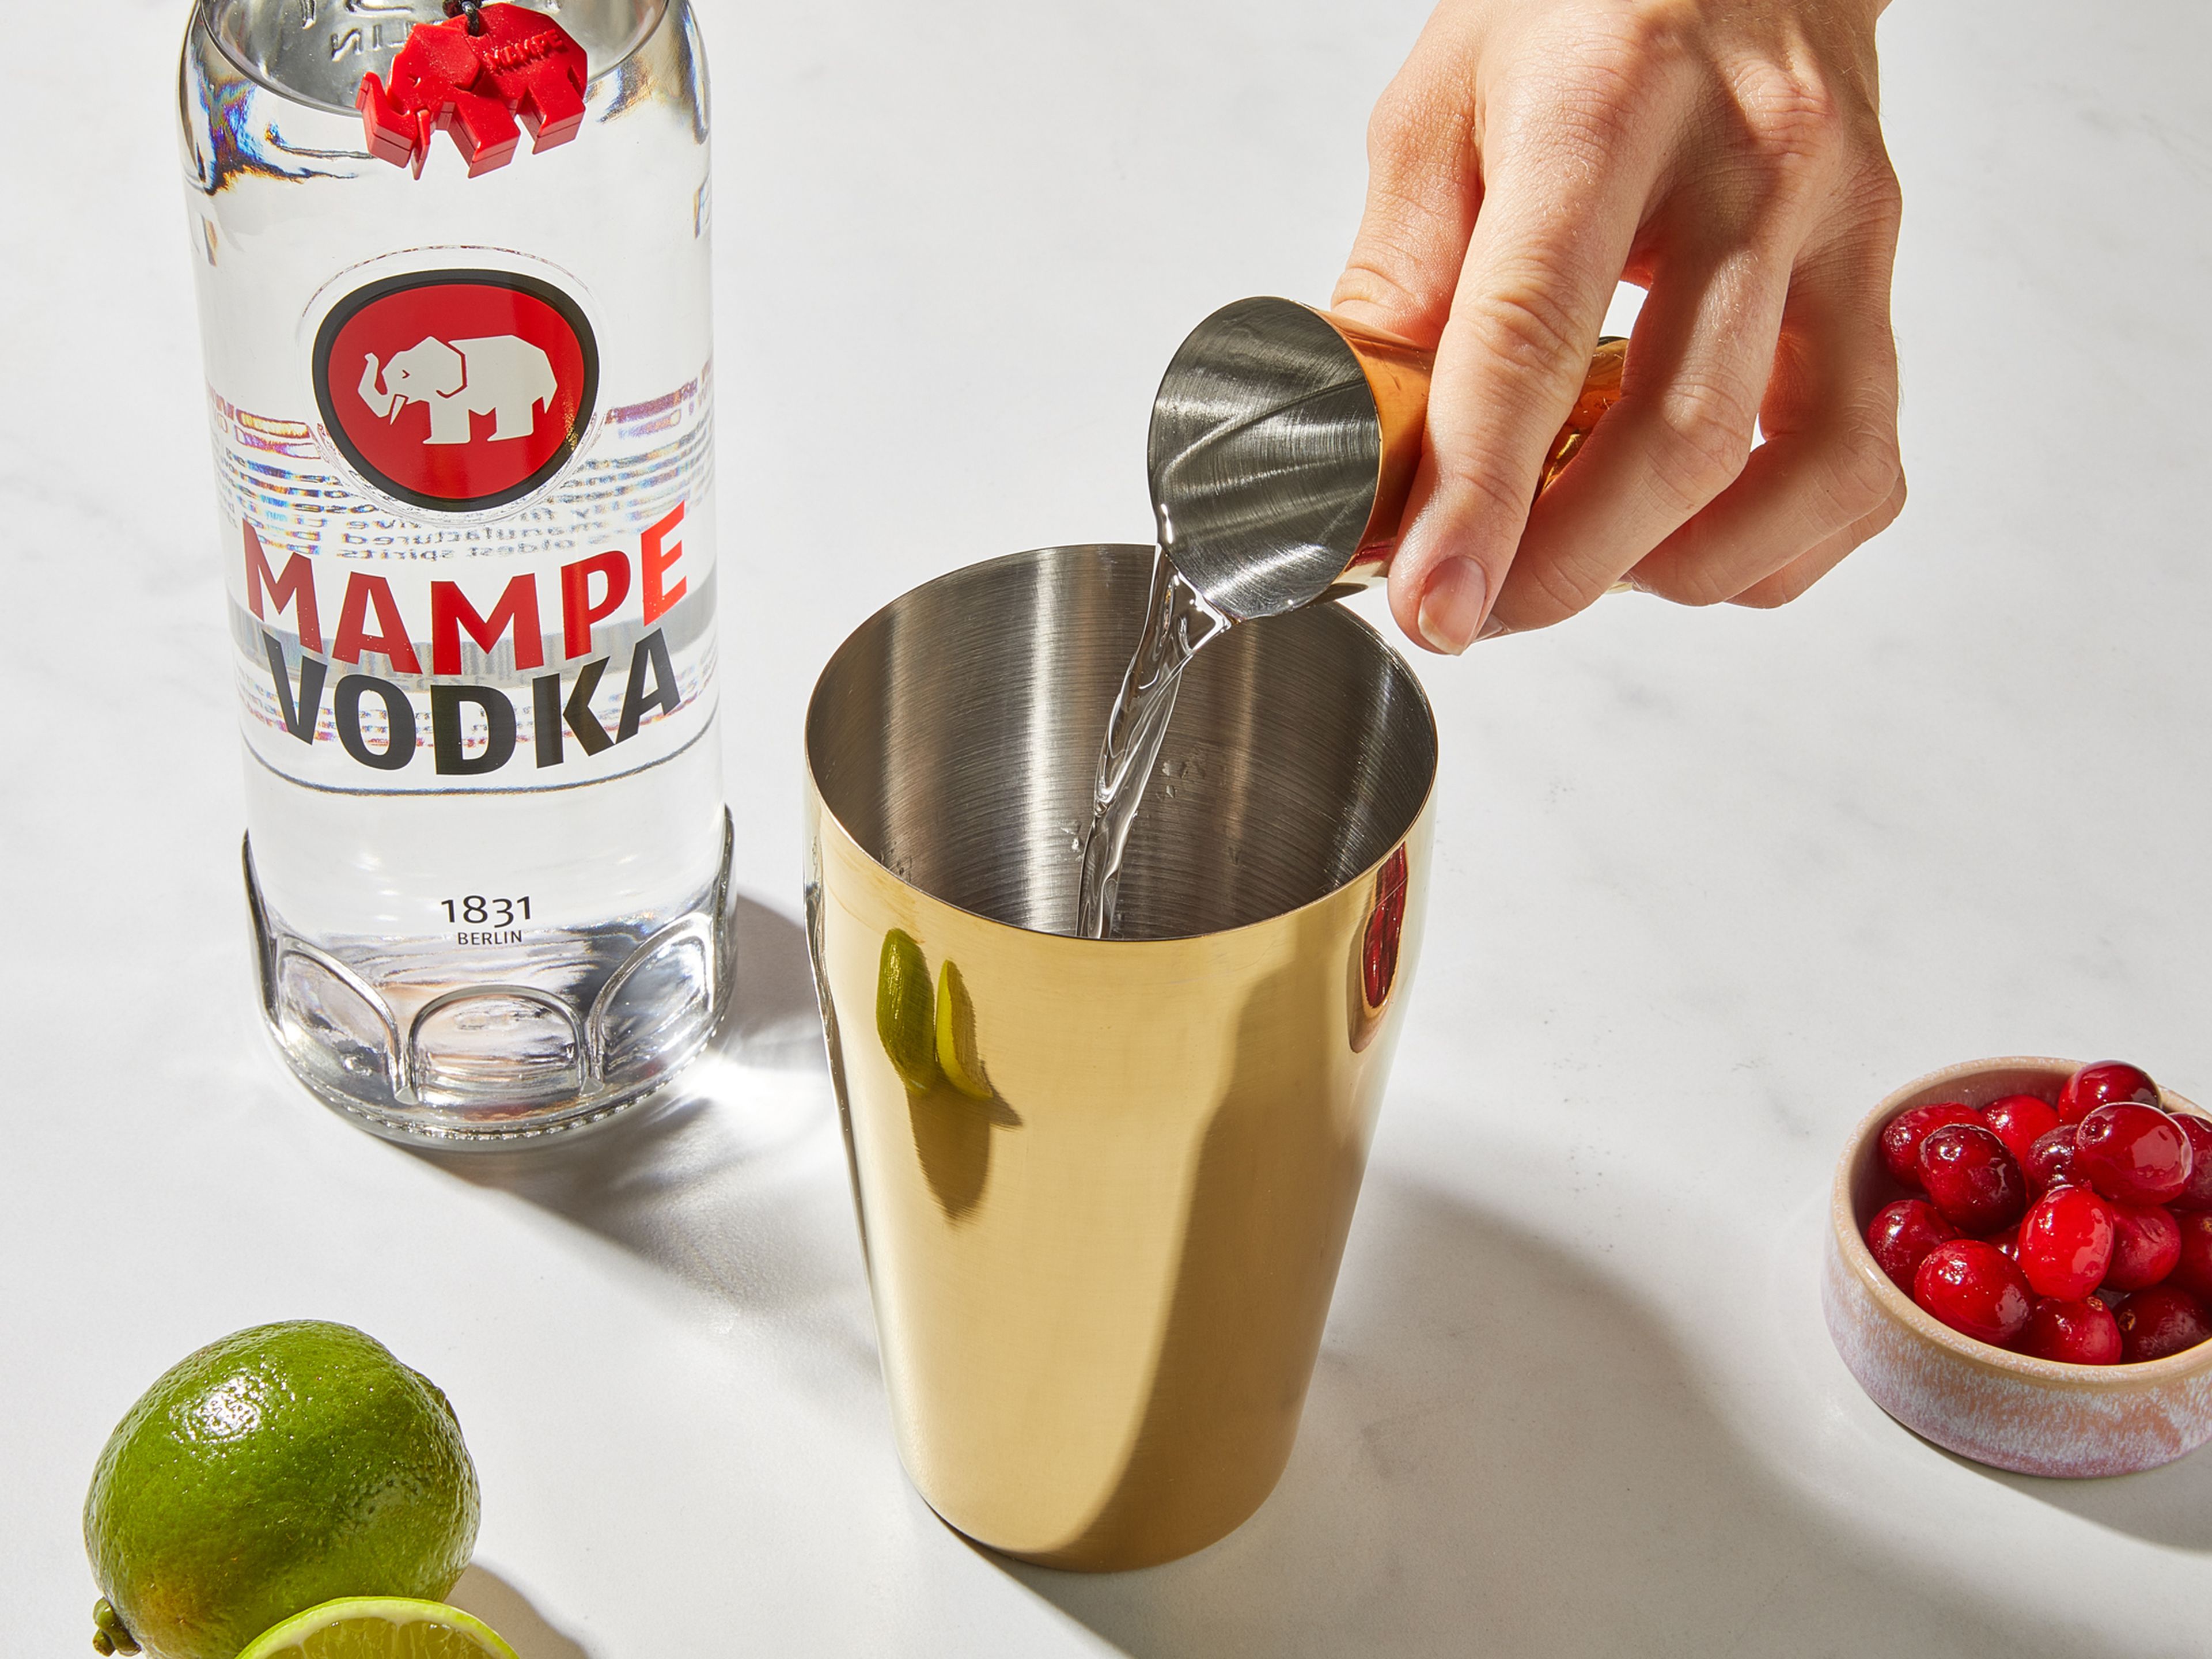 Frische Cranberries in einen Cocktailshaker geben, mit dem Stößel leicht zerdrücken. Die Limette halbieren, eine Scheibe abschneiden und die Hälfte einer Limette auspressen. Zusammen mit dem Cranberrysaft in den Shaker geben. Den Mampe Vodka hinzufügen, mit Eiswürfeln auffüllen und kräftig schütteln.